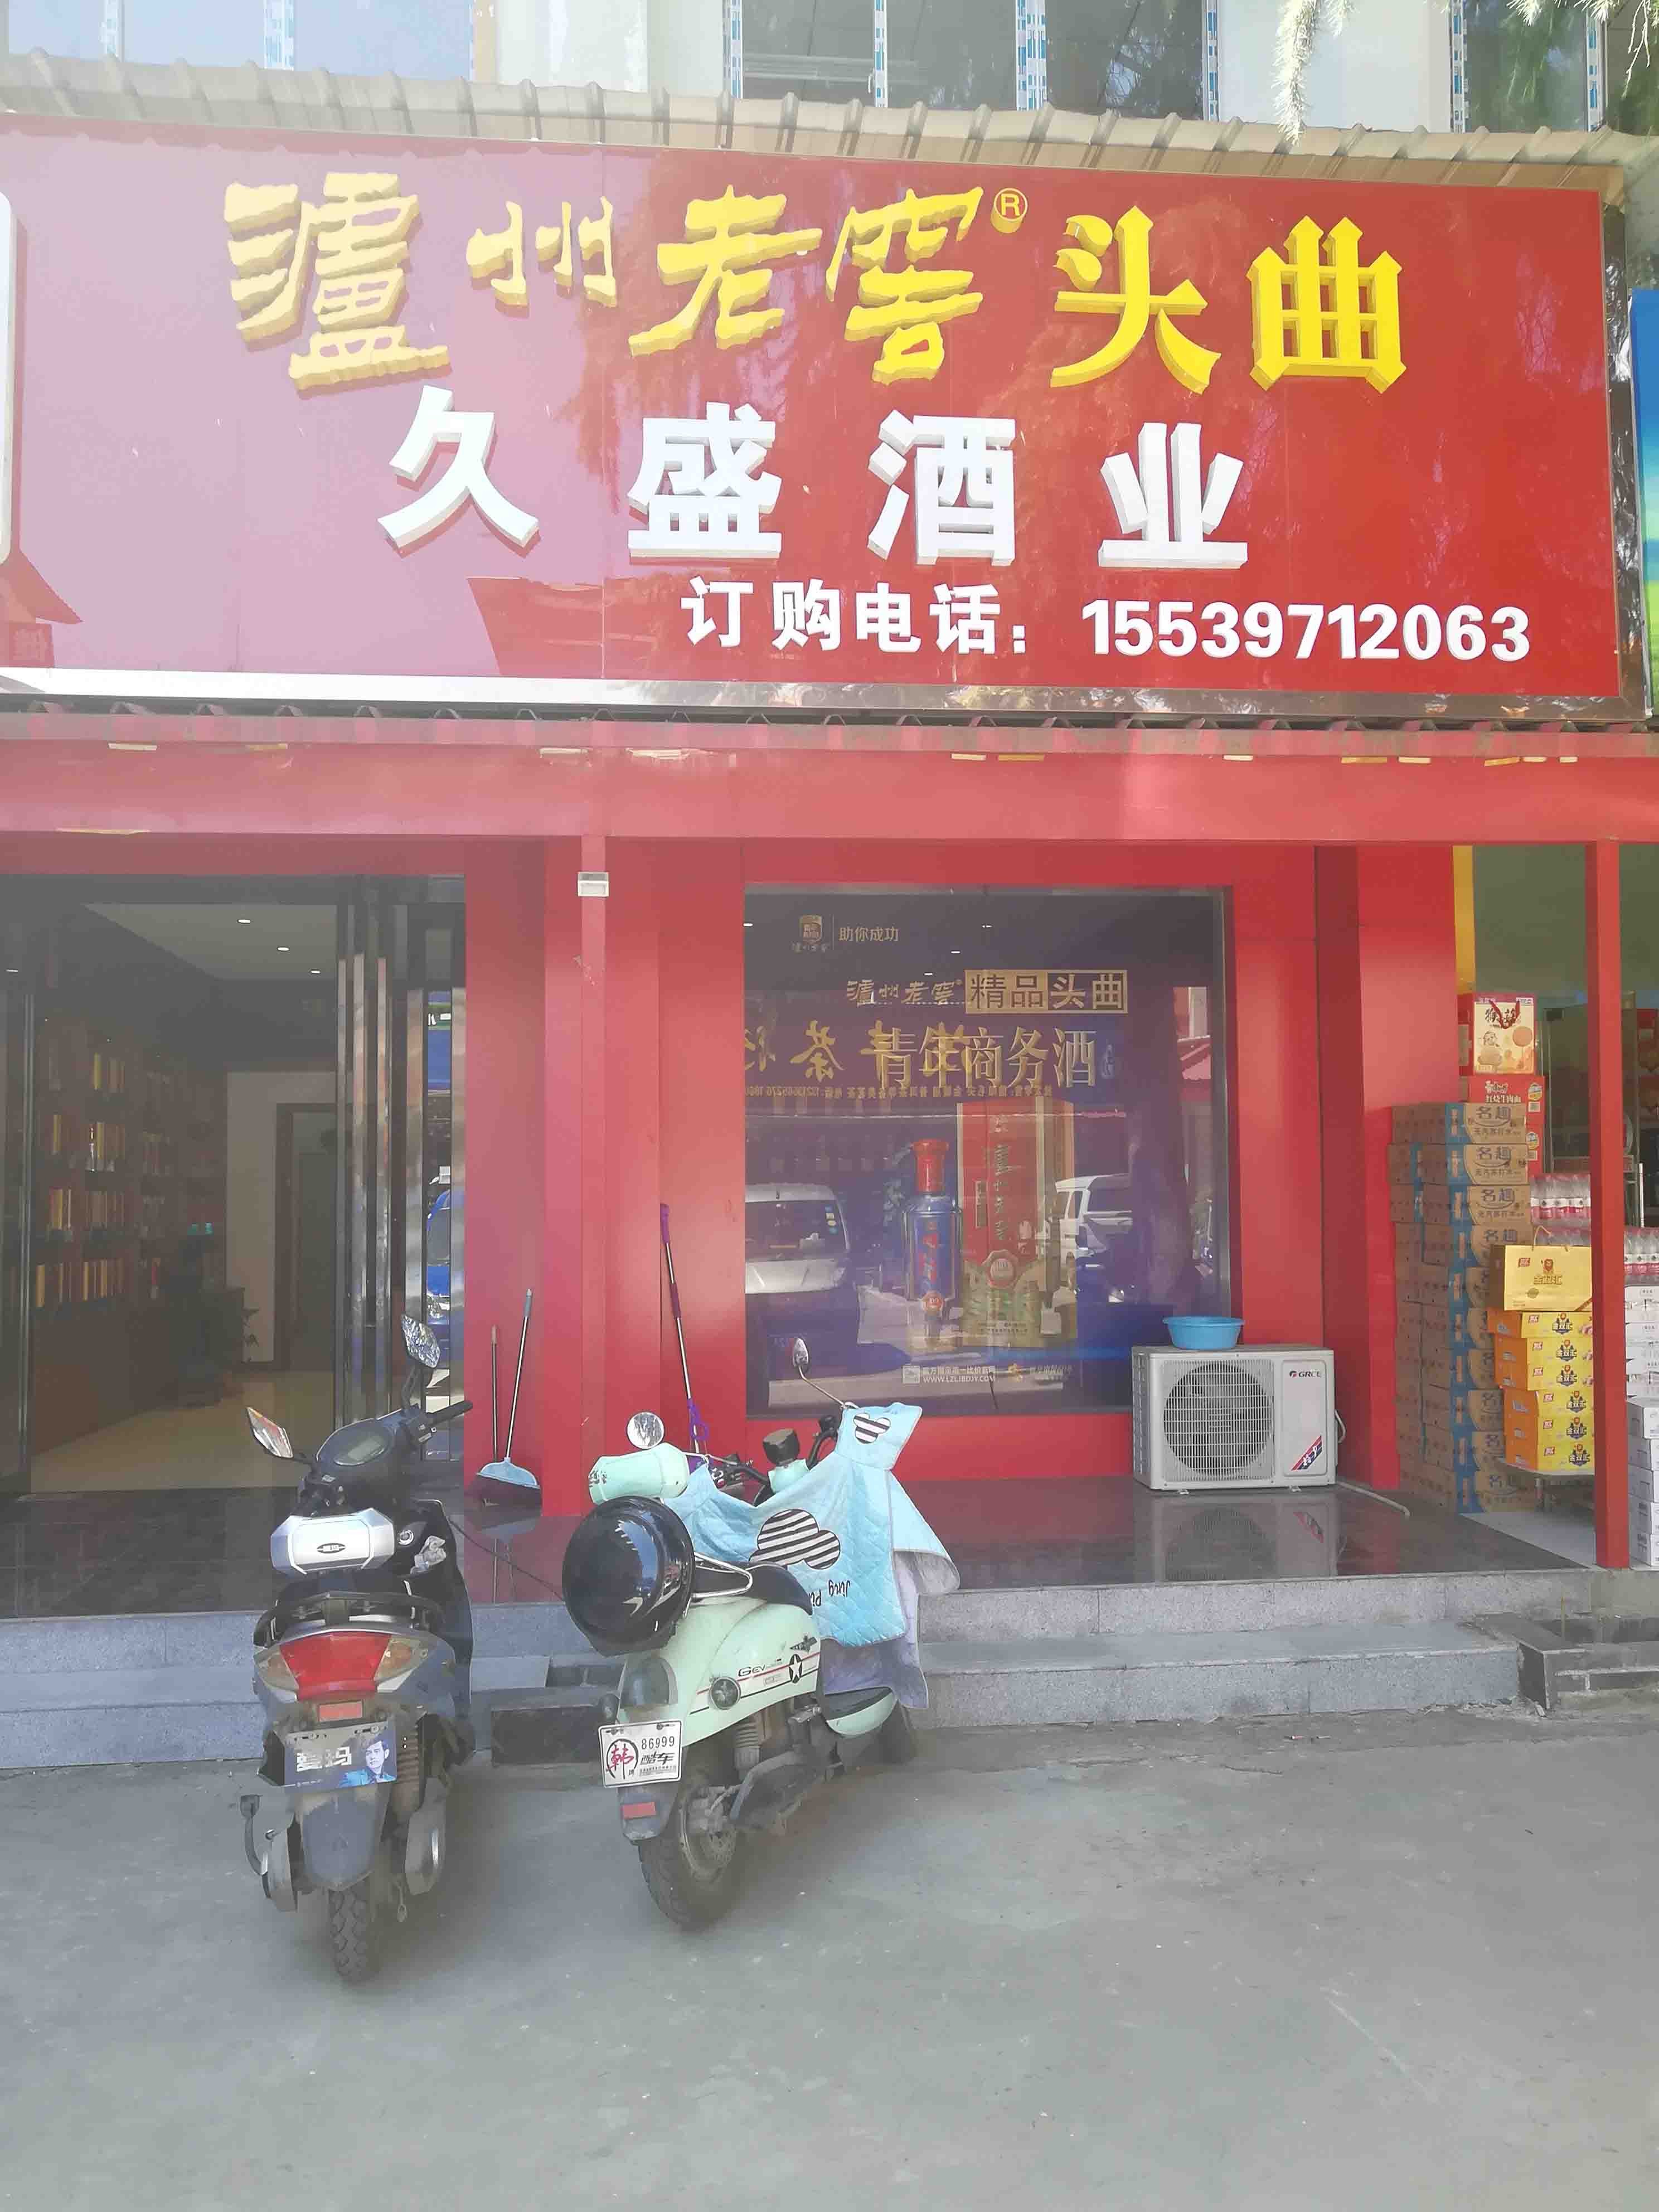 上海市场步行街在洛阳出租高端写字楼，专注于寻求办公环境的企业和企业家设计。我们提供豪华写字楼，保证您的商务需求得到满足